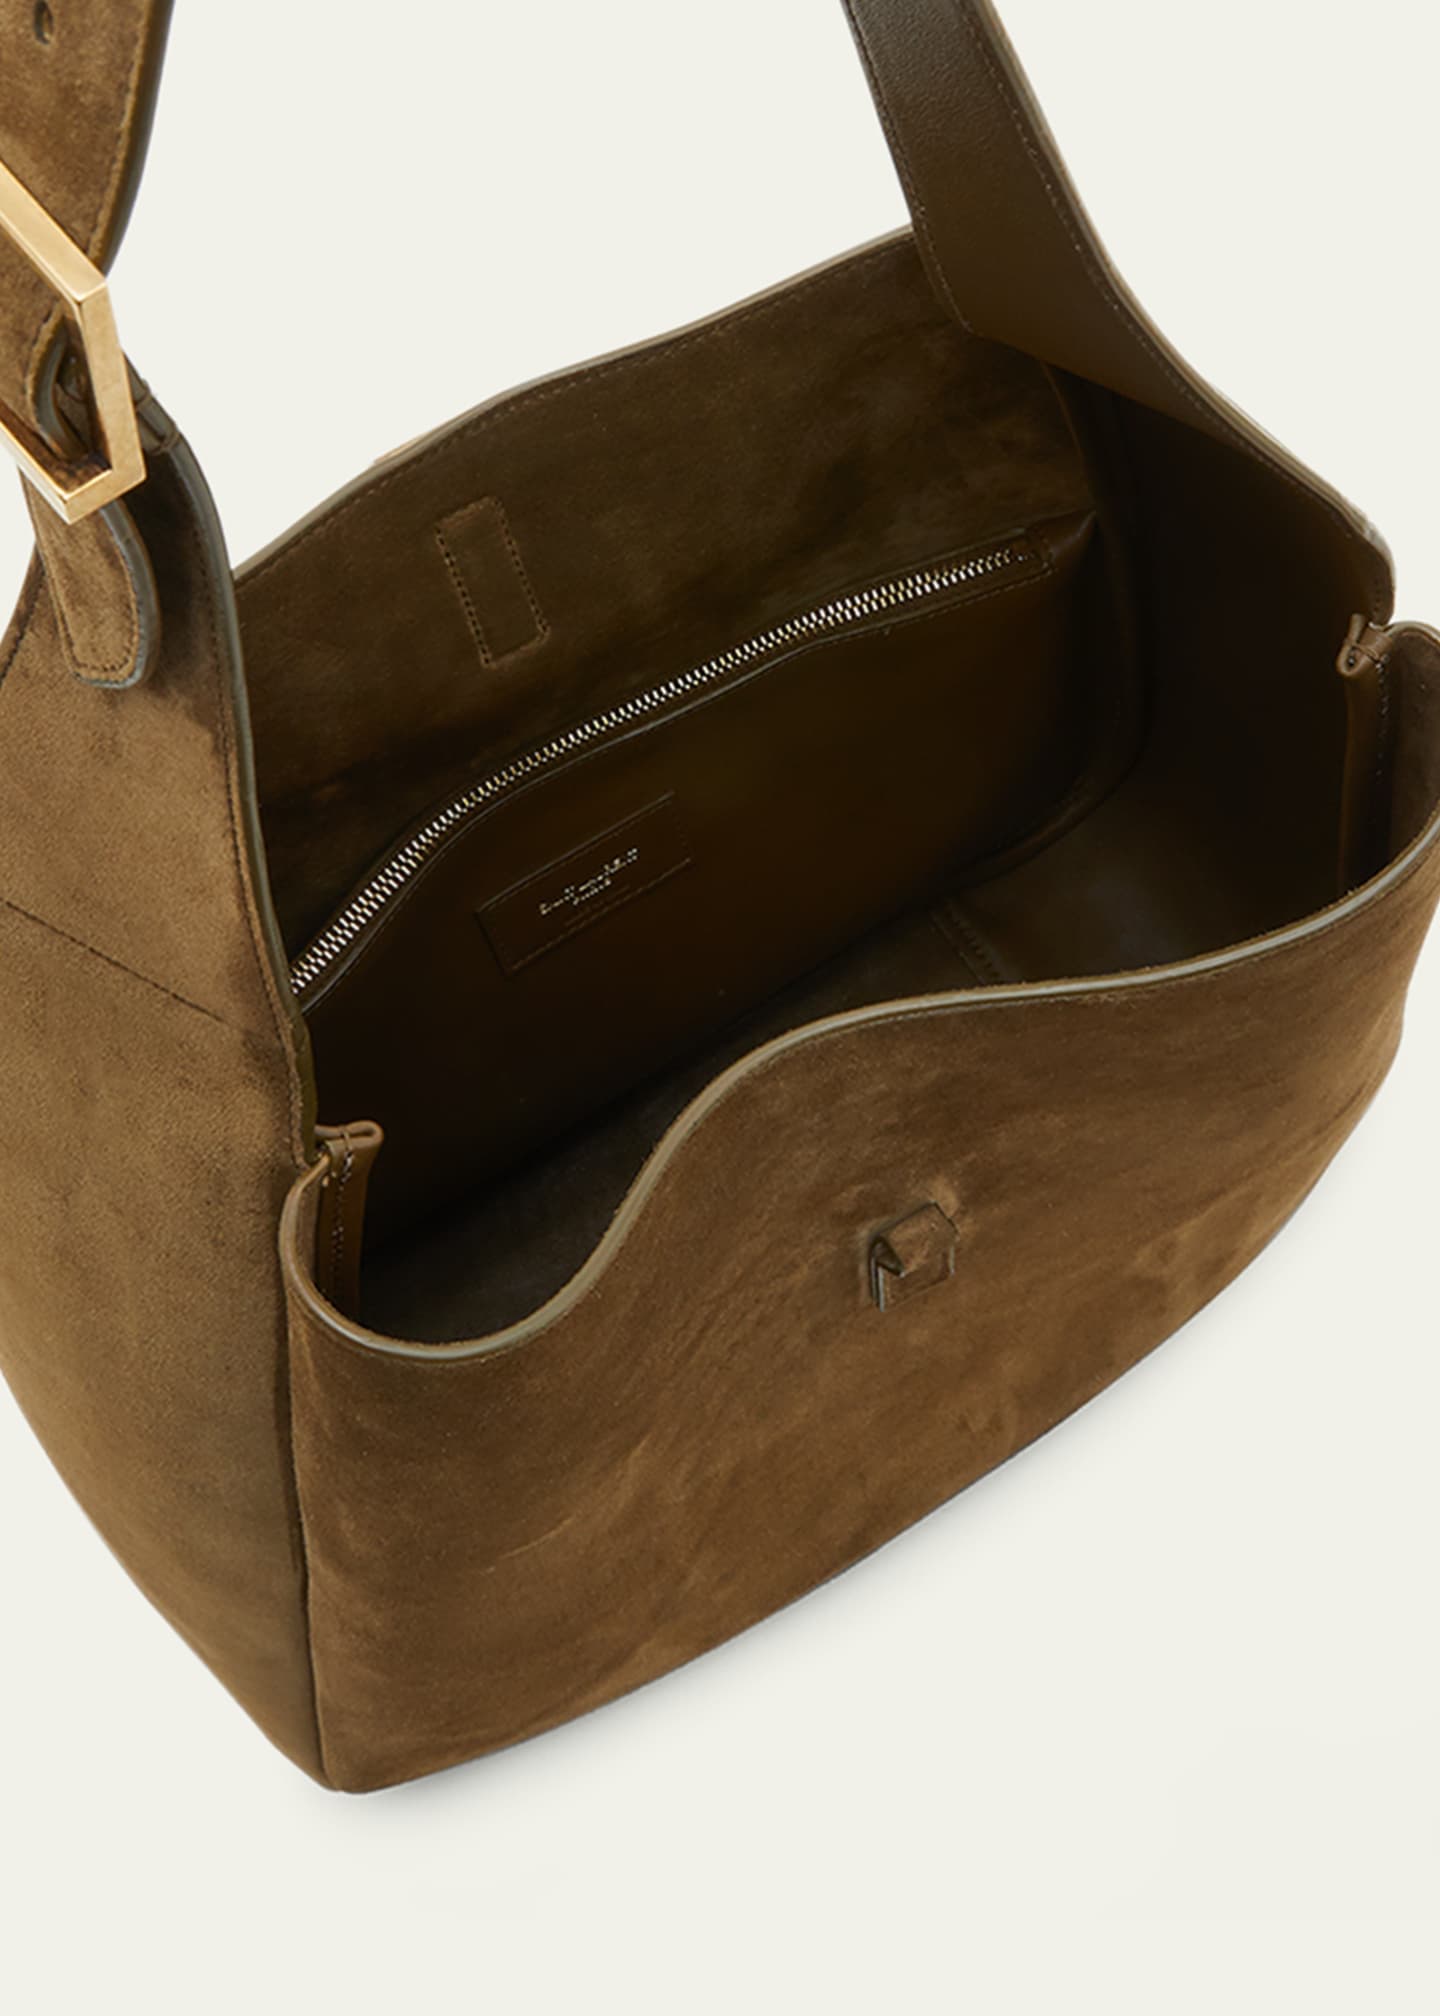 Brown Le 5A7 suede shoulder bag, Saint Laurent